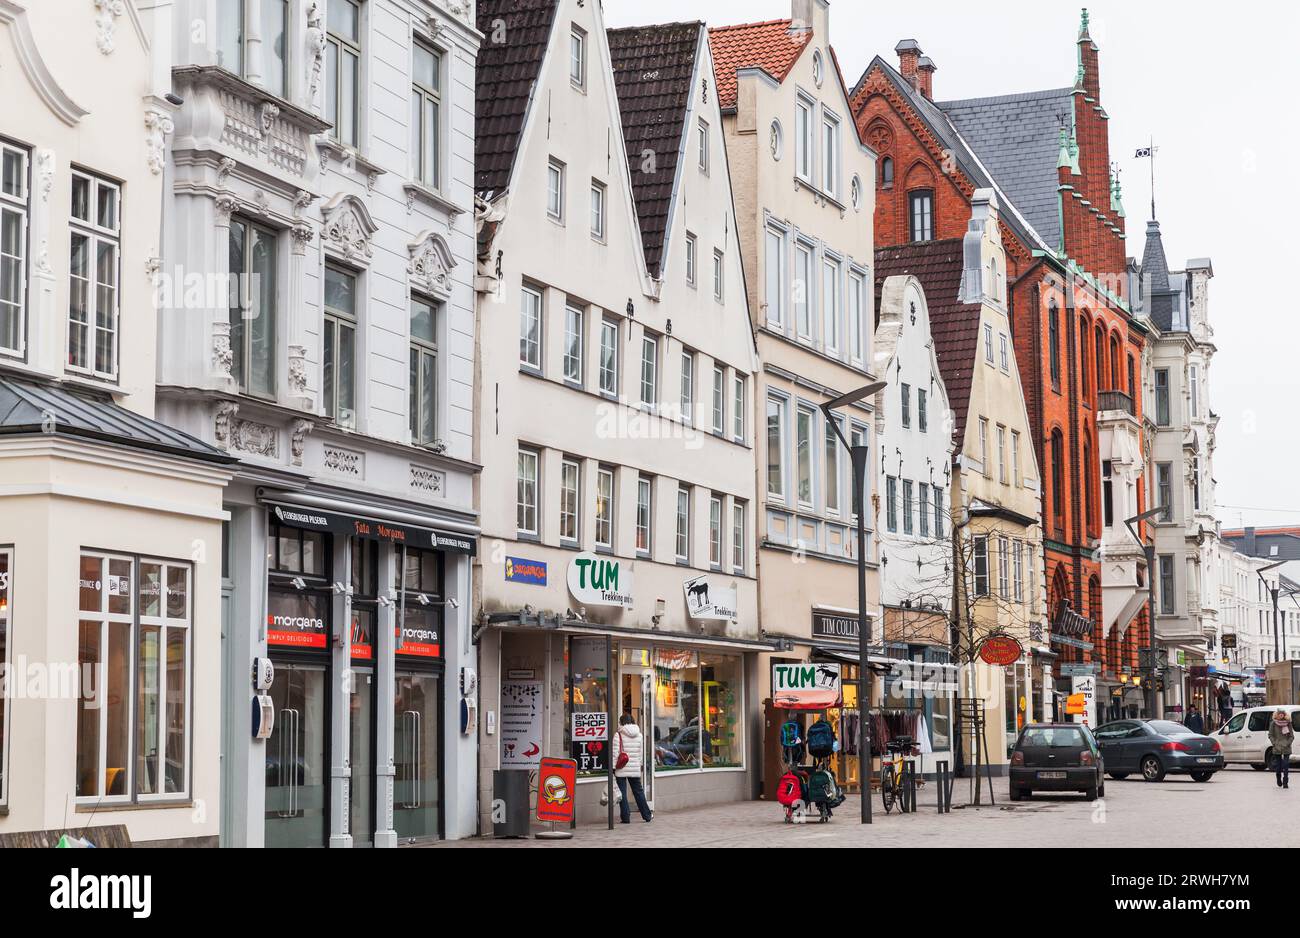 Flensburg, Deutschland - 10. Februar 2017: Straßenansicht der Flensburger Stadt mit traditionellen alten deutschen Häusern tagsüber laufen normale Menschen die Straße entlang Stockfoto